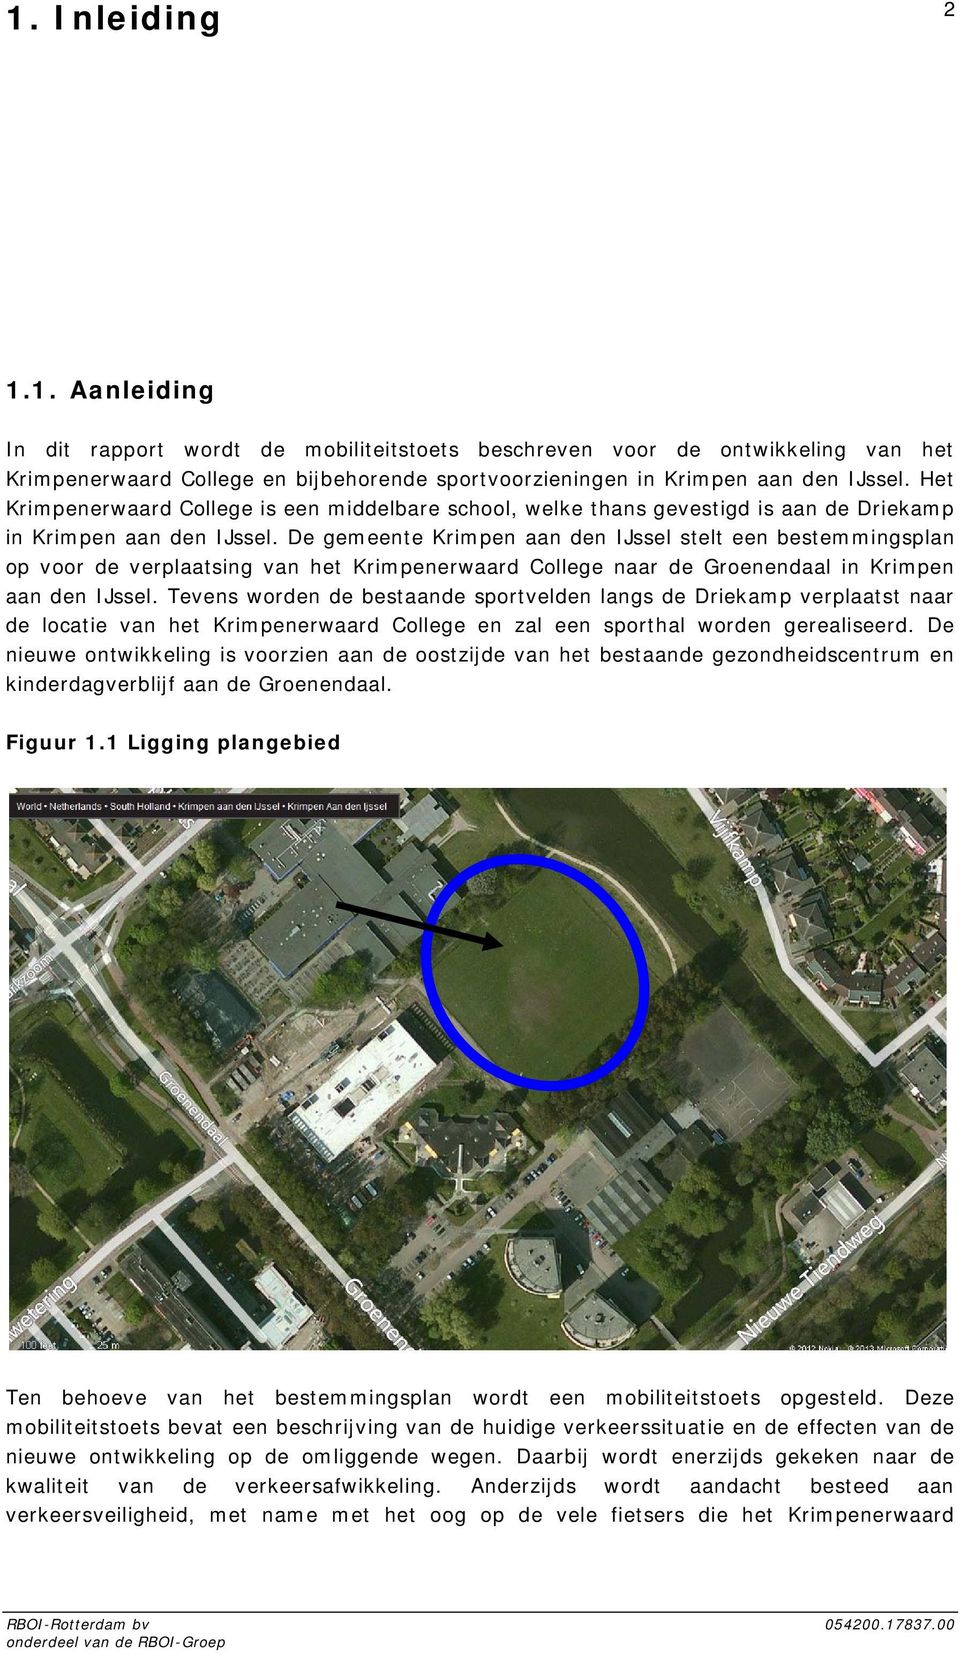 De gemeente Krimpen aan den IJssel stelt een bestemmingsplan op voor de verplaatsing van het Krimpenerwaard College naar de Groenendaal in Krimpen aan den IJssel.